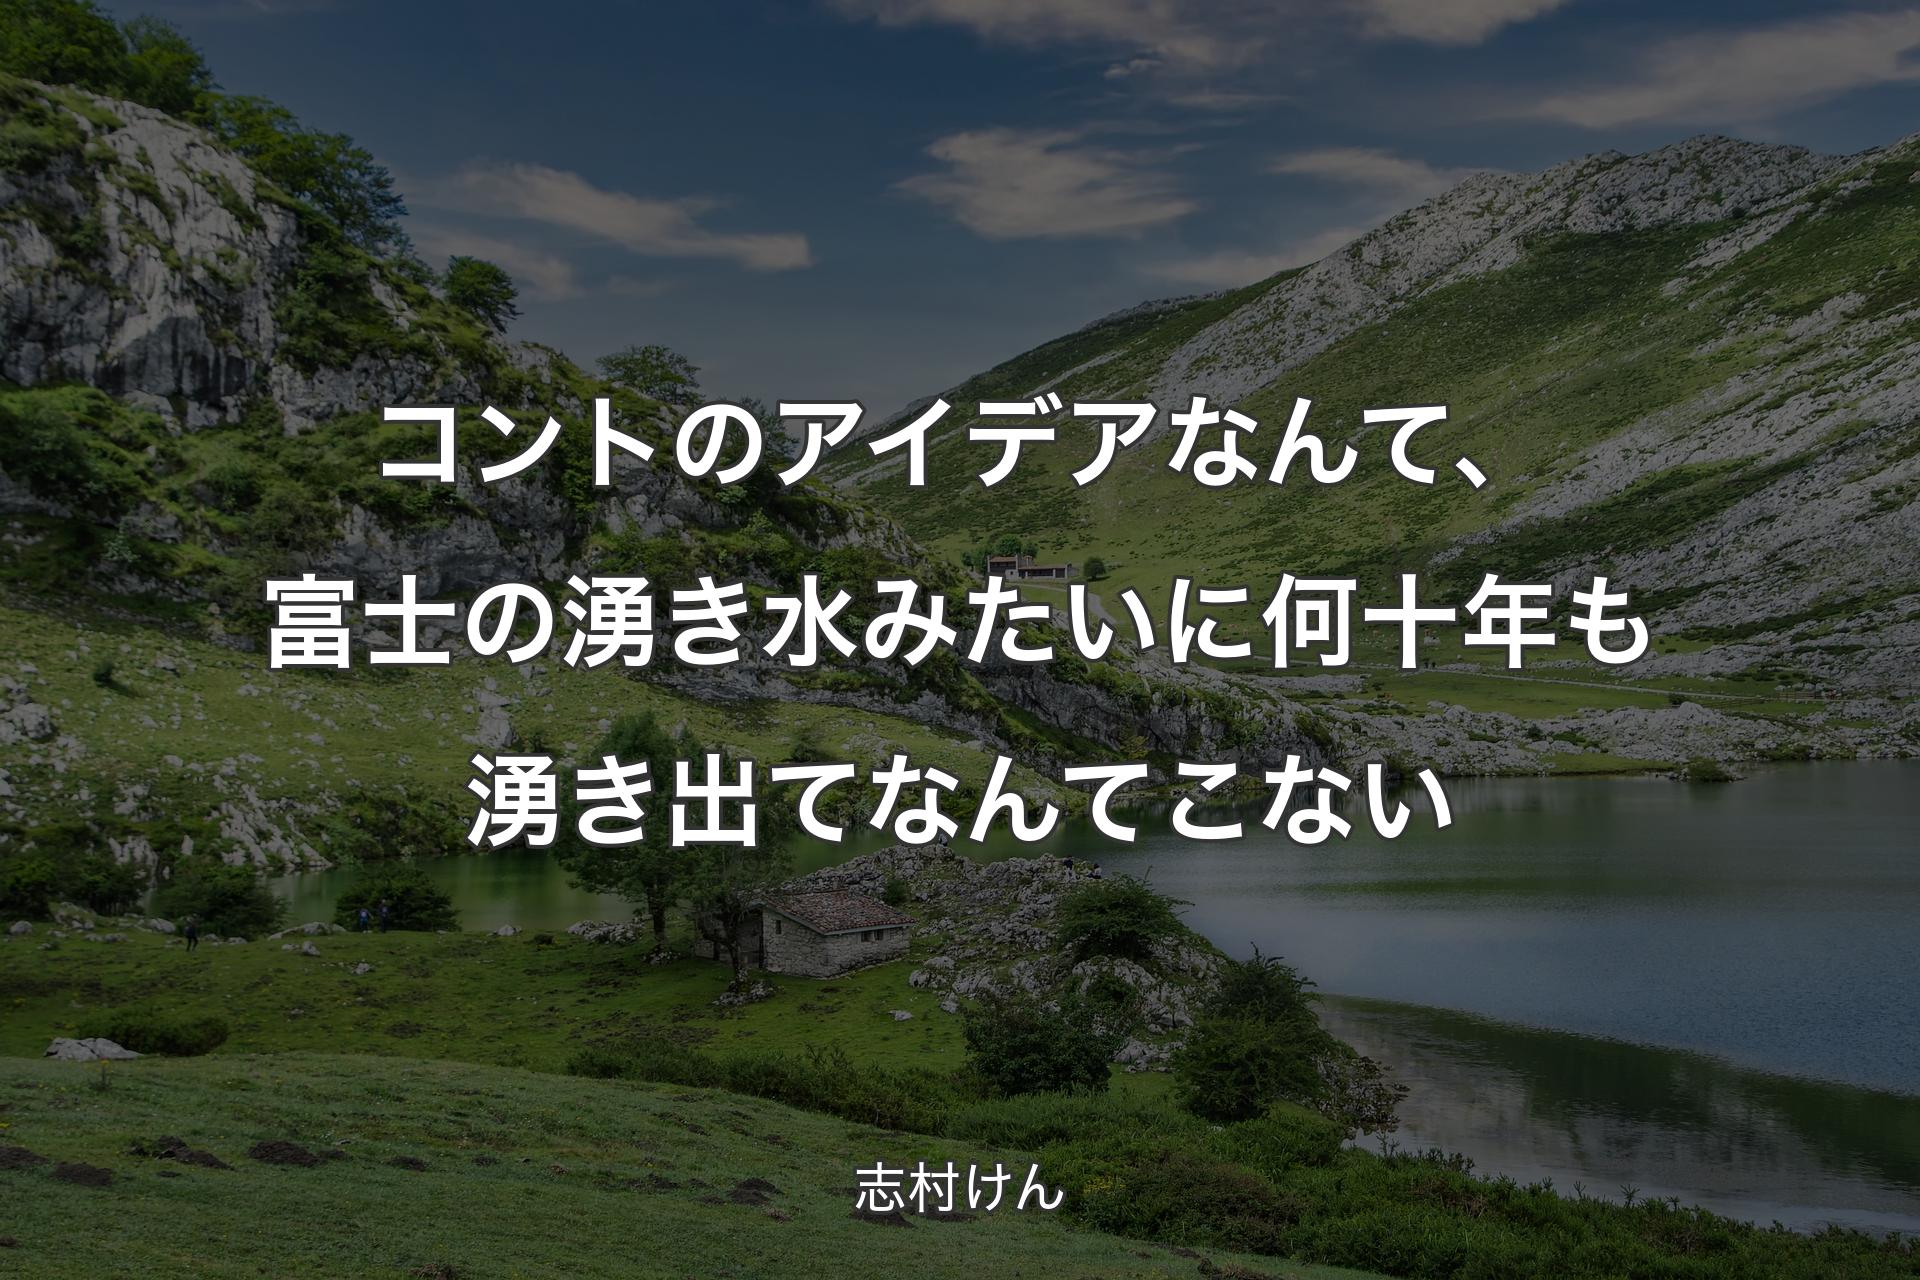 【背景1】コントのアイデアなんて、富士の湧き水みたいに何十年も湧き出てなんてこない - 志村けん